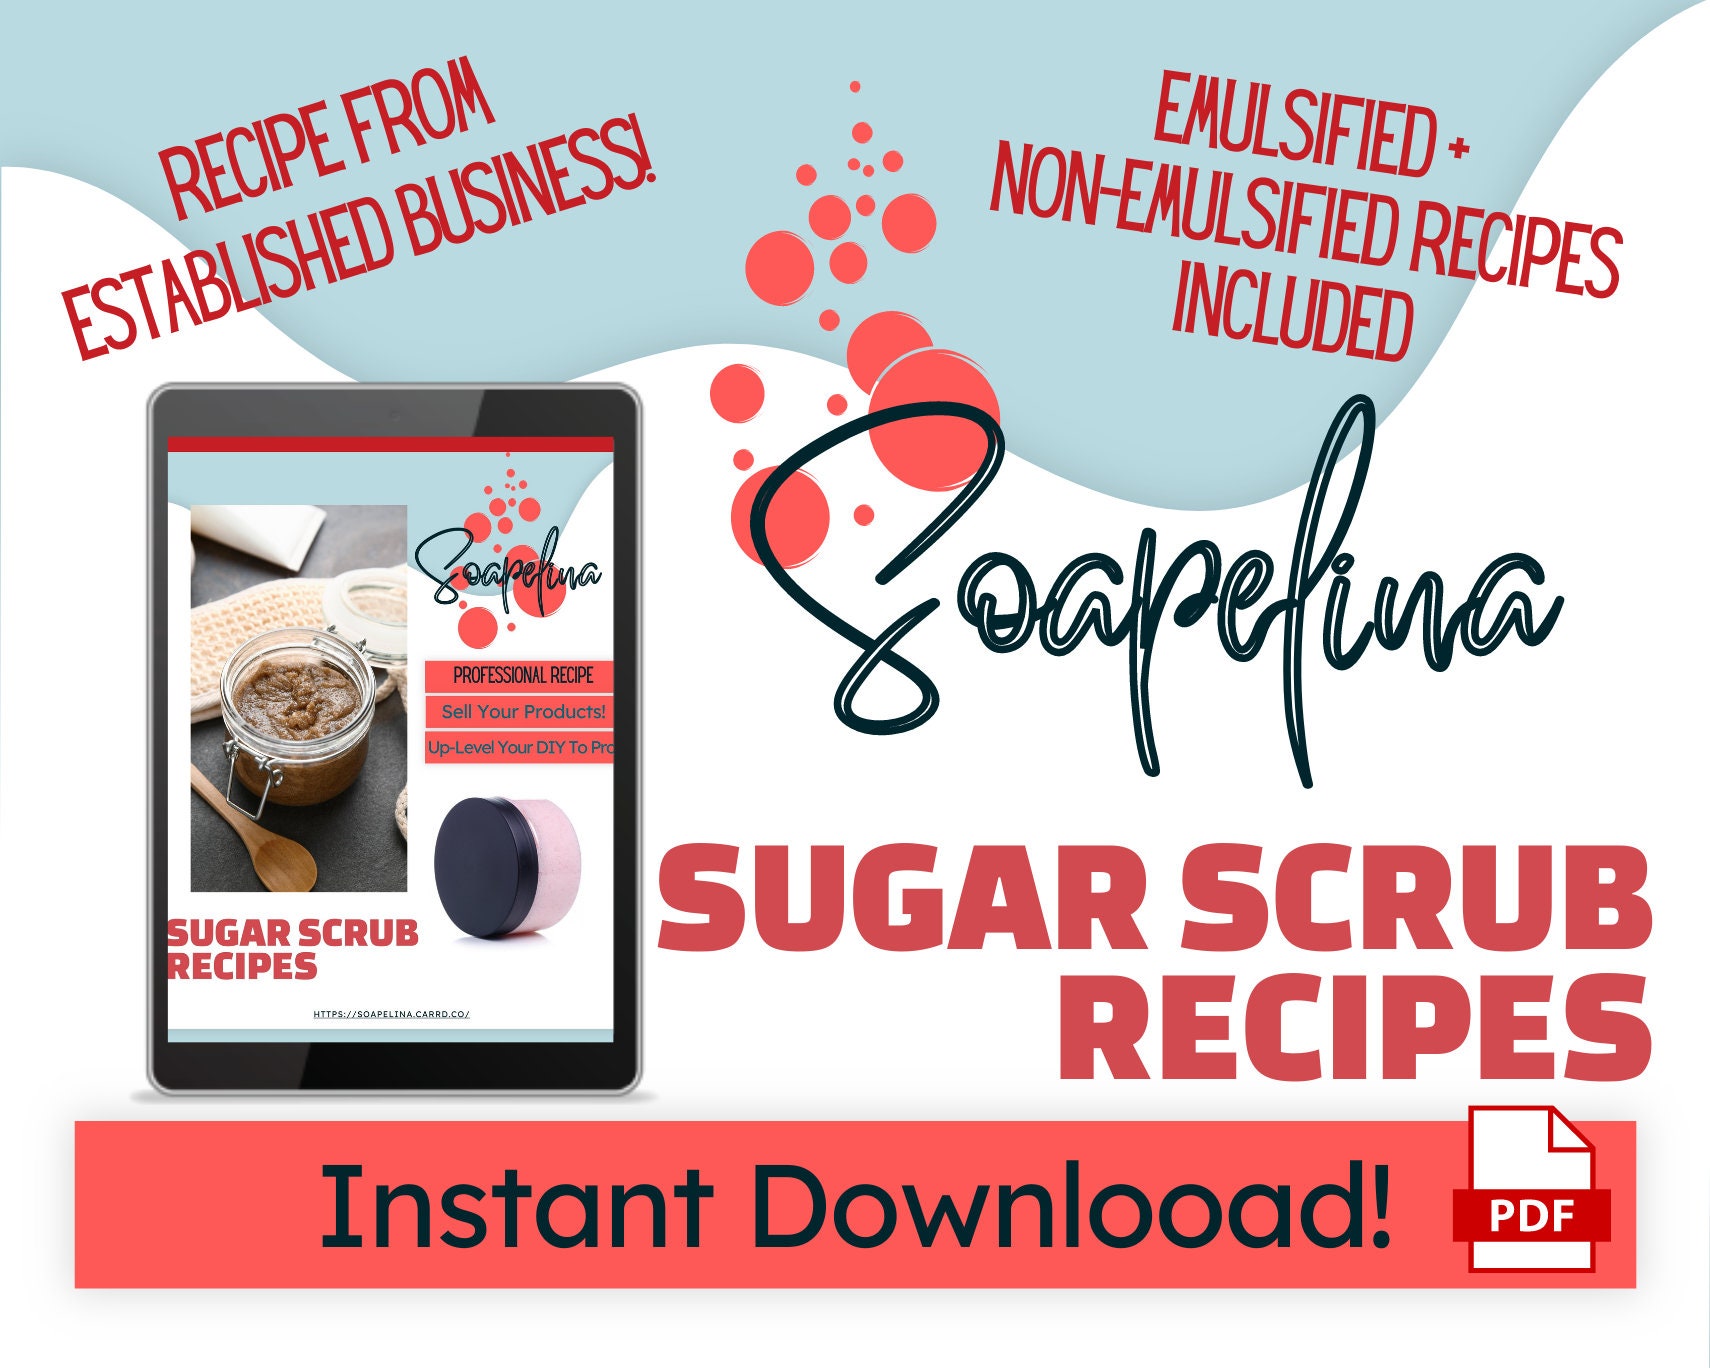 Sugar Scrub Recipe hq nude image